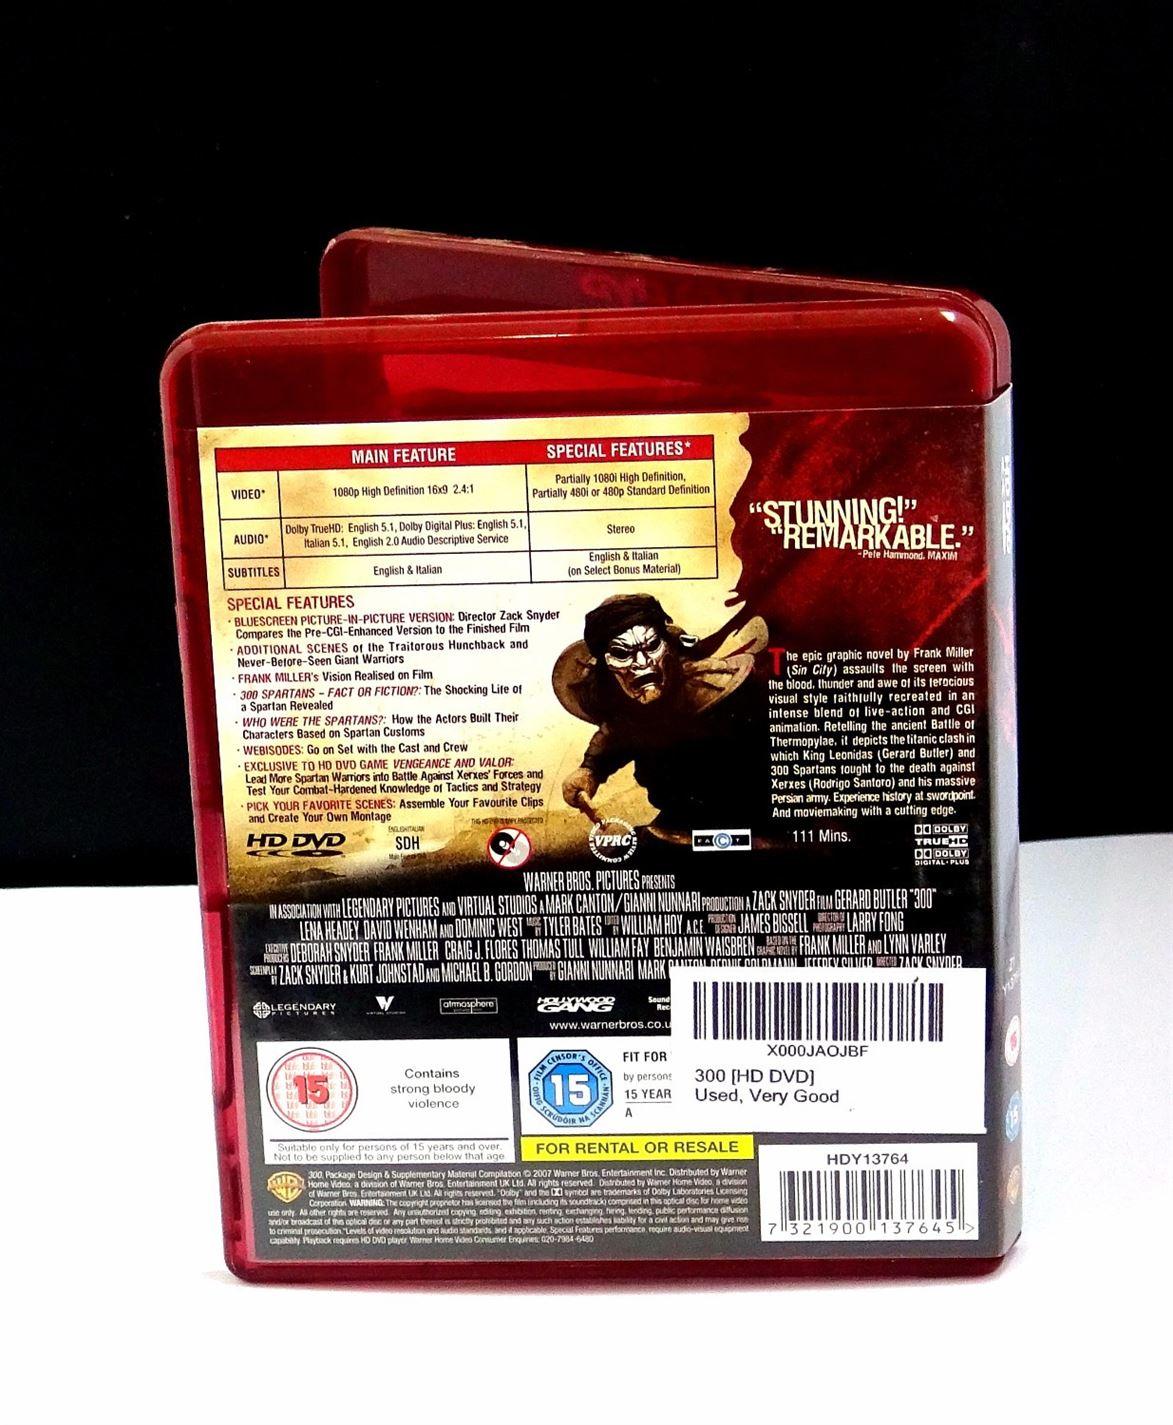 300 (HD DVD) - UK Seller